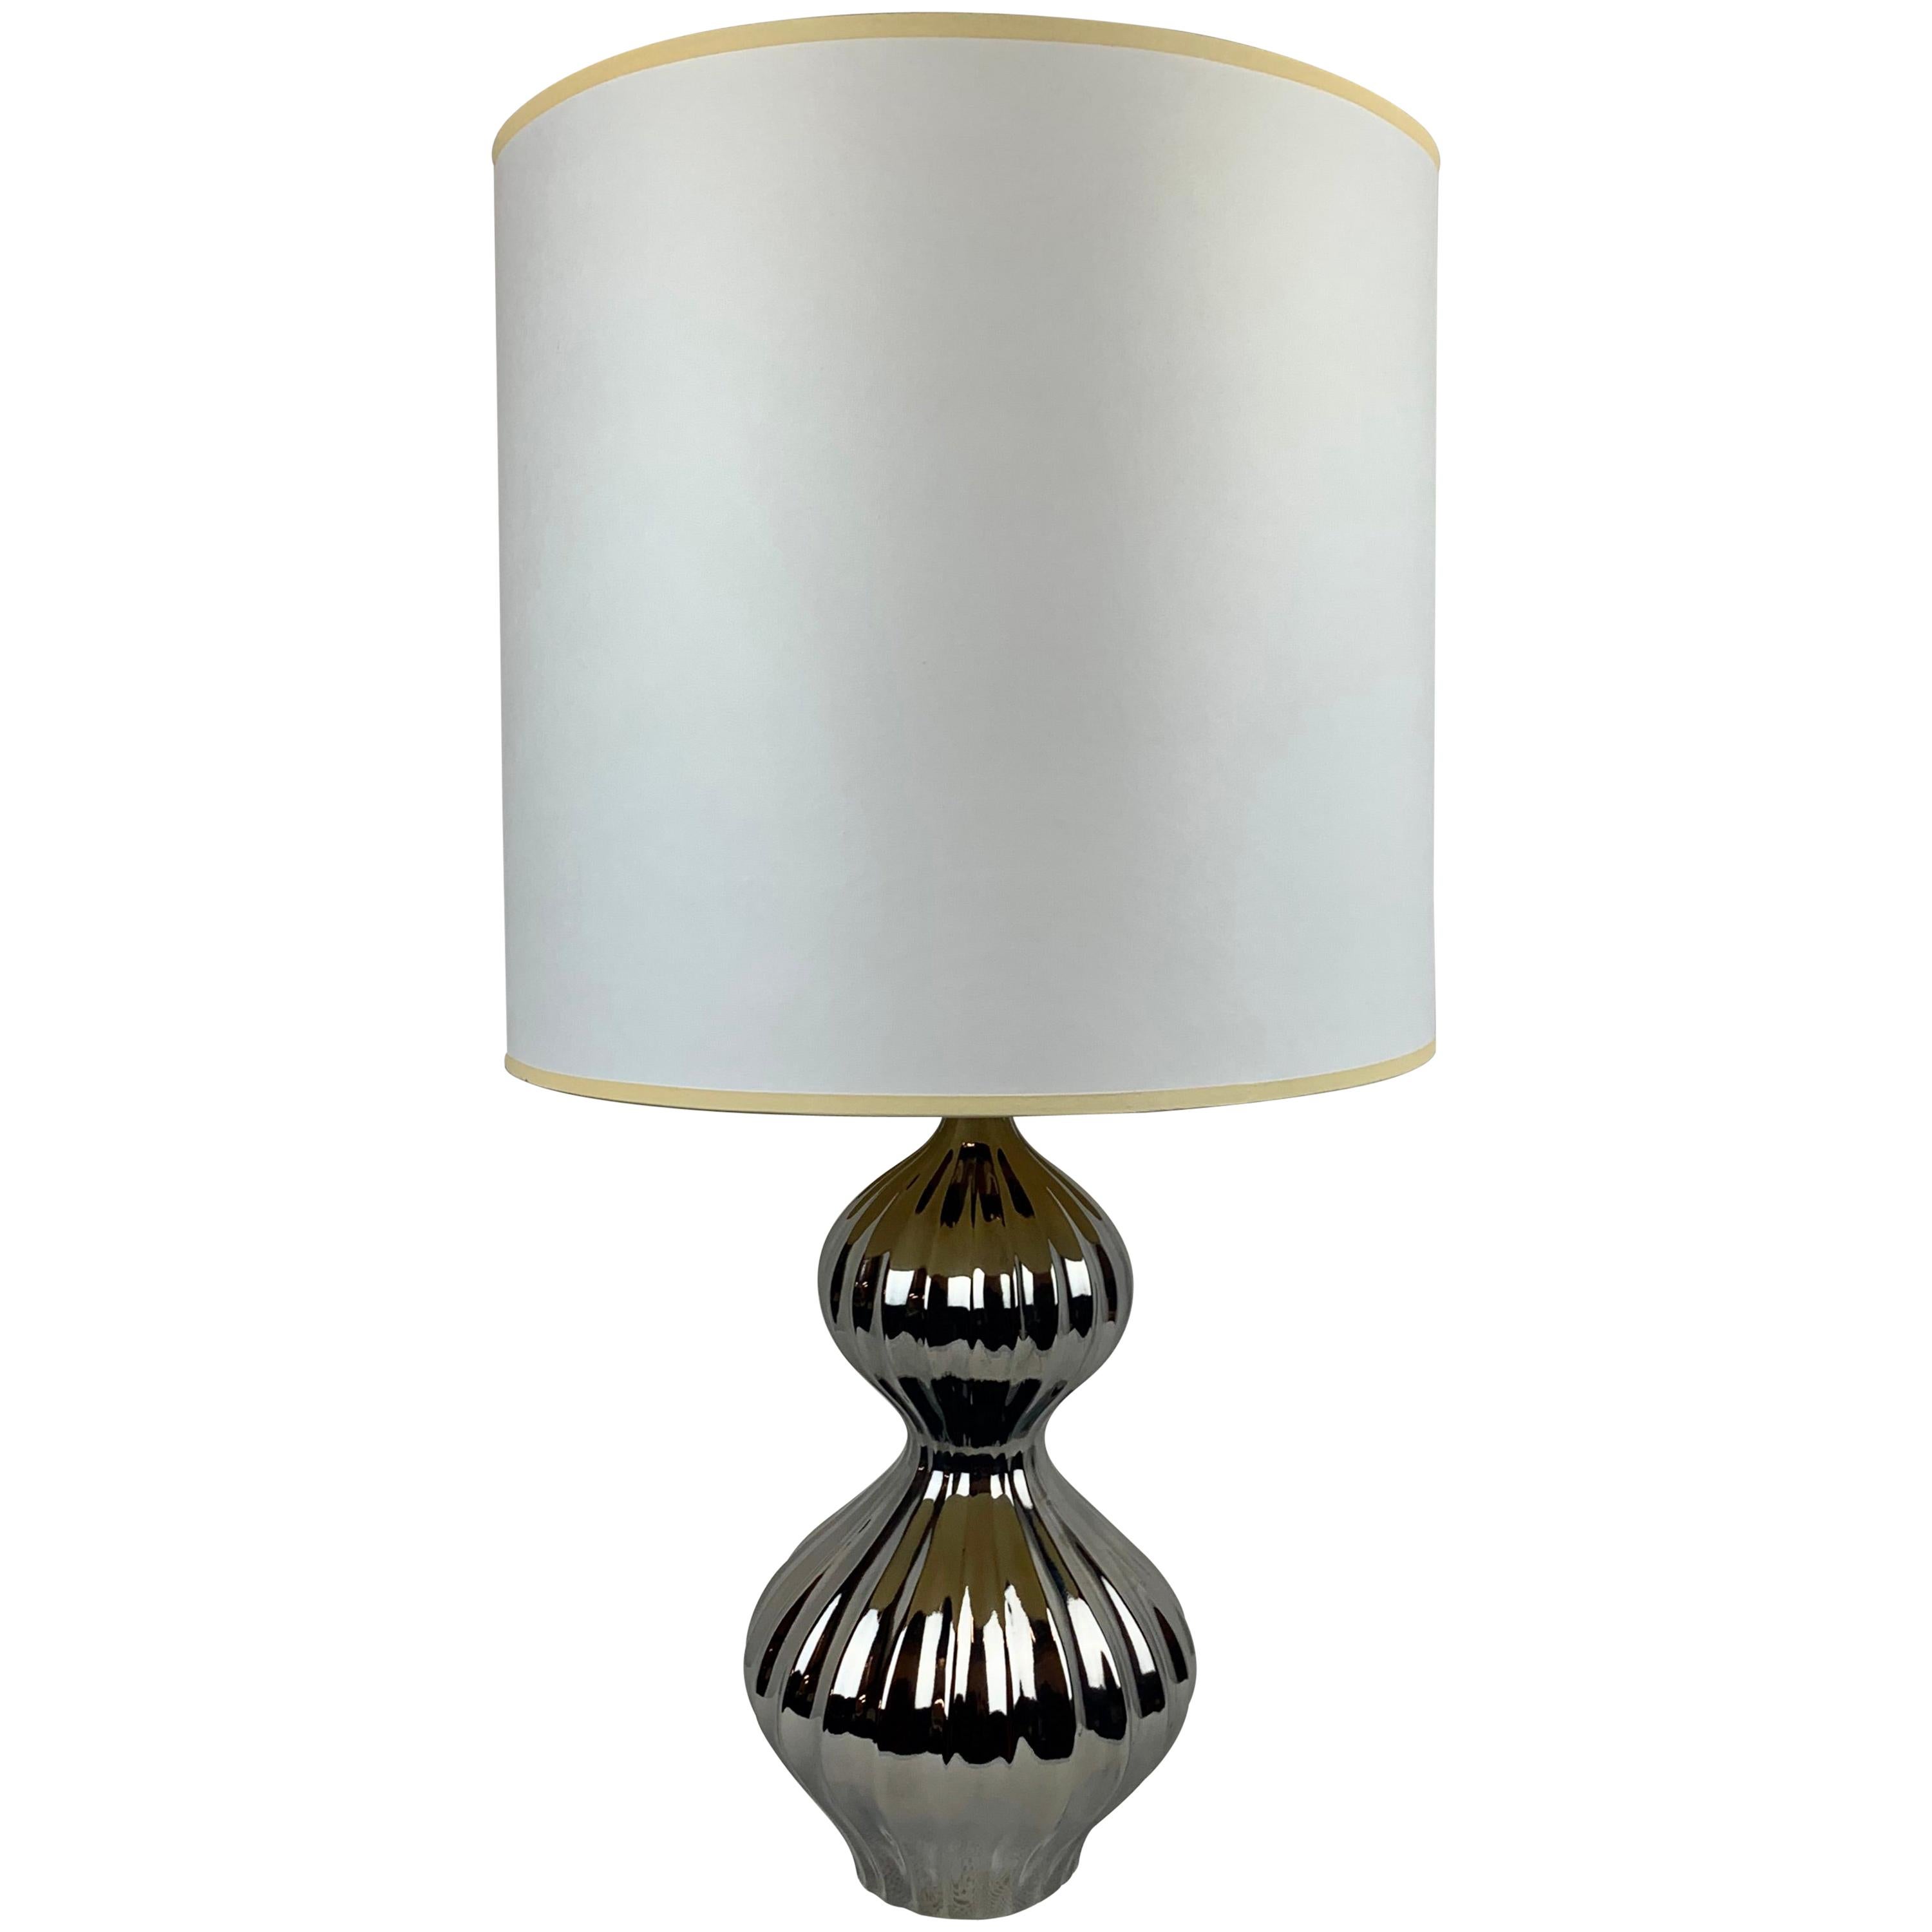 Platinum Nelson Table Lamp by Jonathan Adler